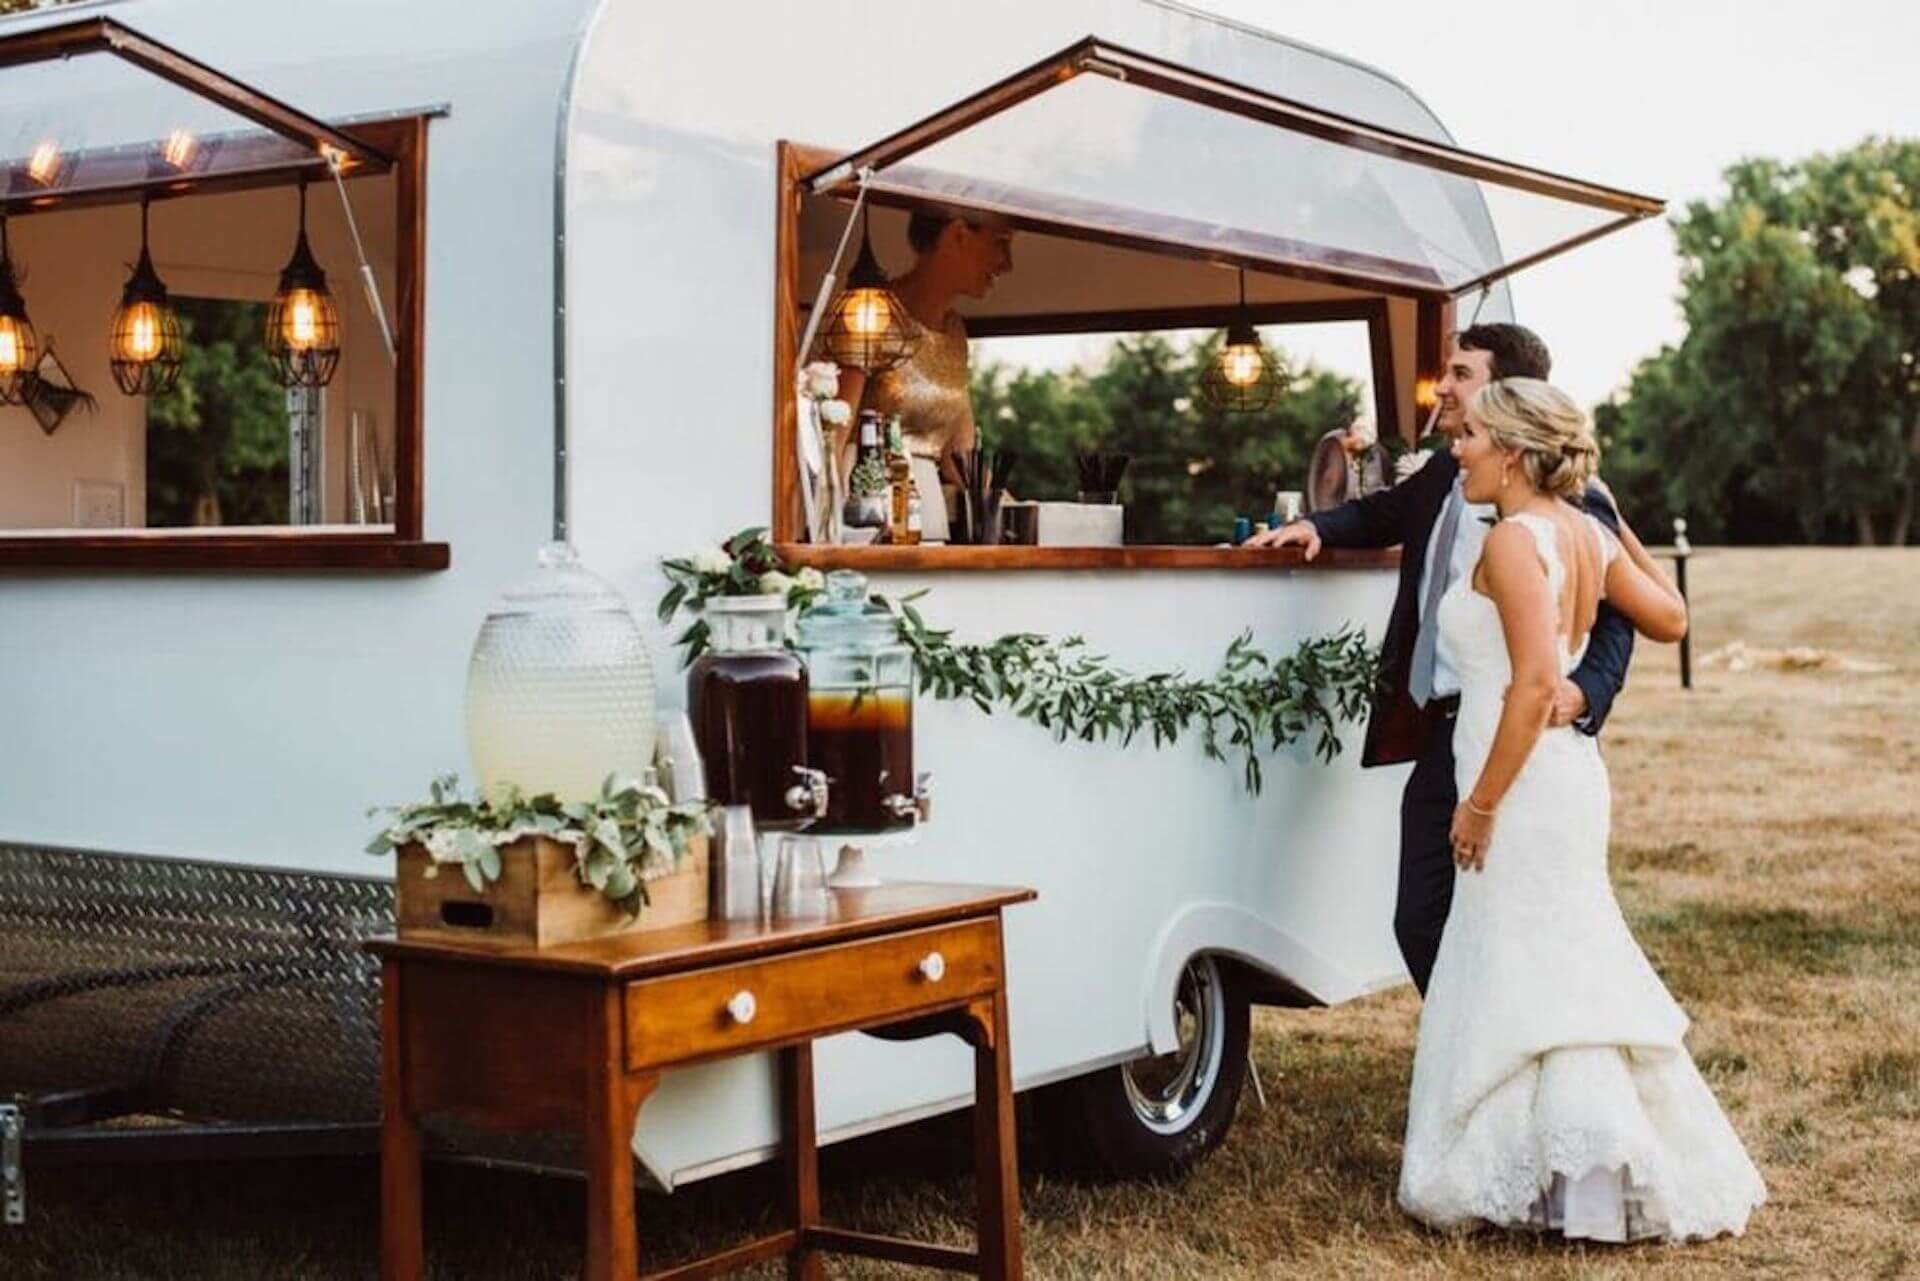 Wedding Food Truck more than a wedding buffet